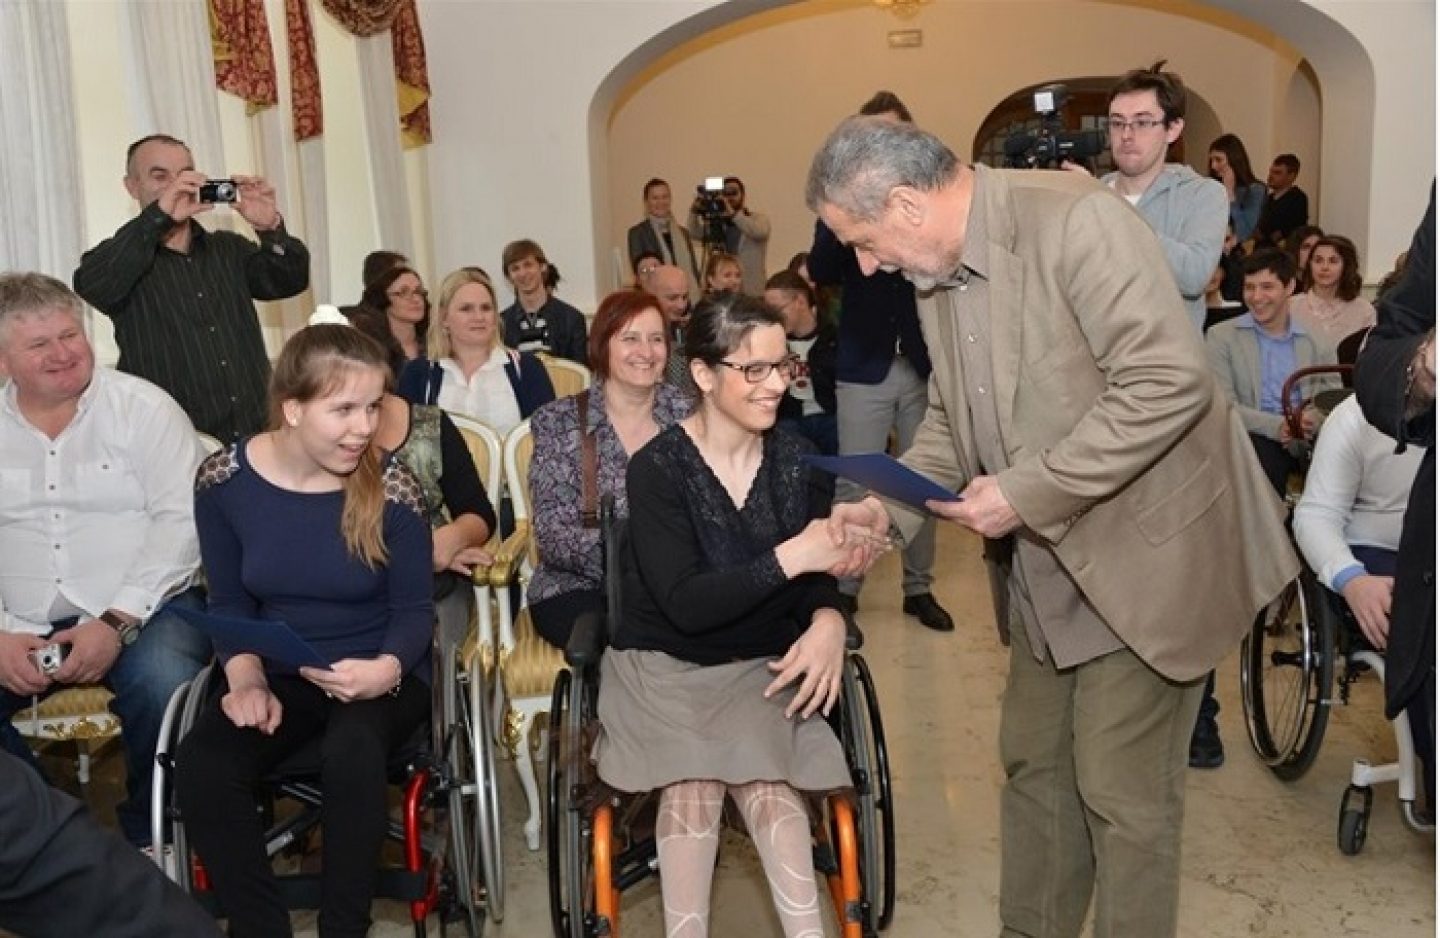 Grad Zagreb plaća školovanje učenicima i studentima s invaliditetom